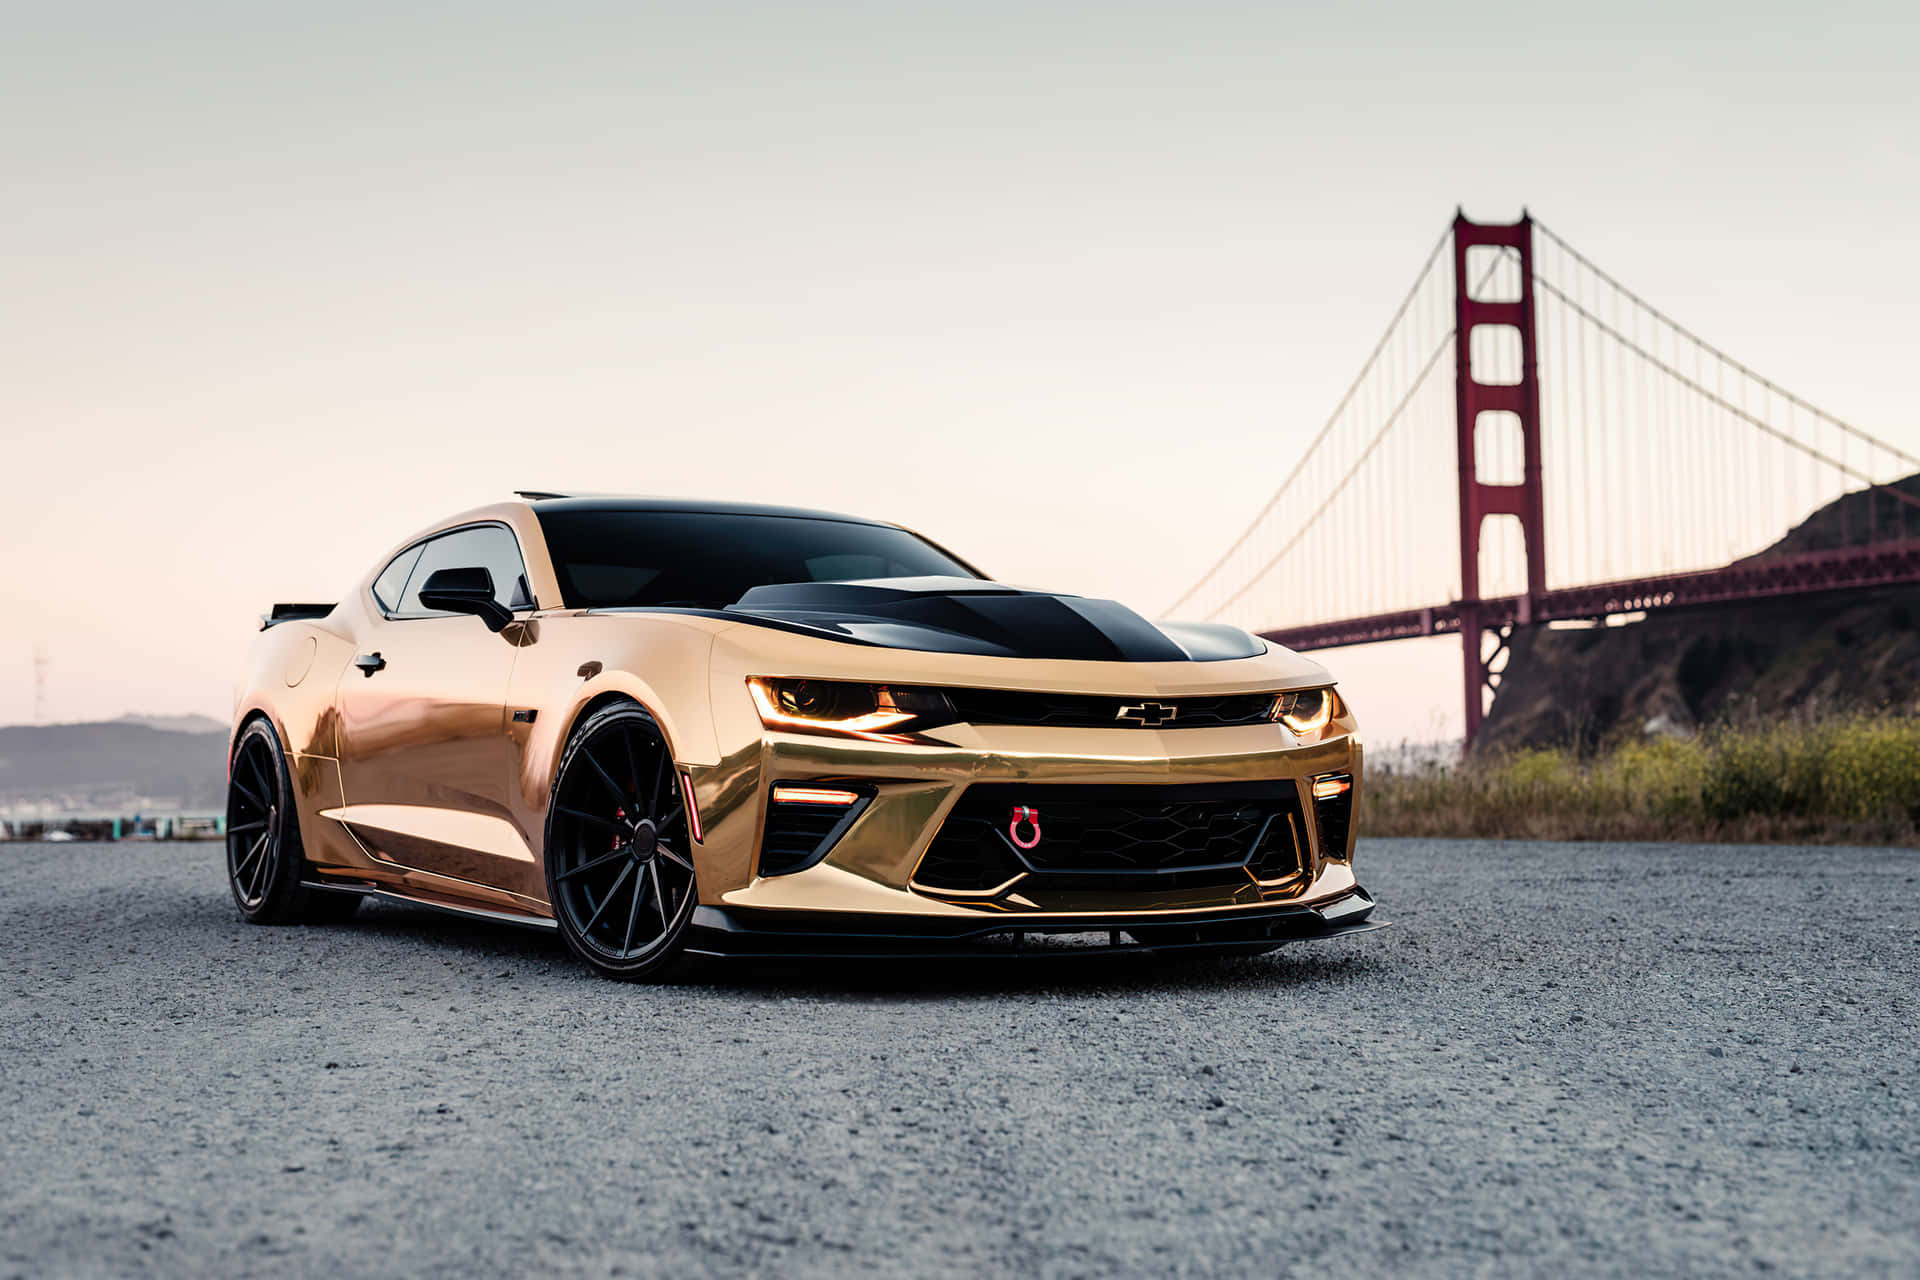 Gold Cars Chevrolet Golden Gate Bridge Wallpaper